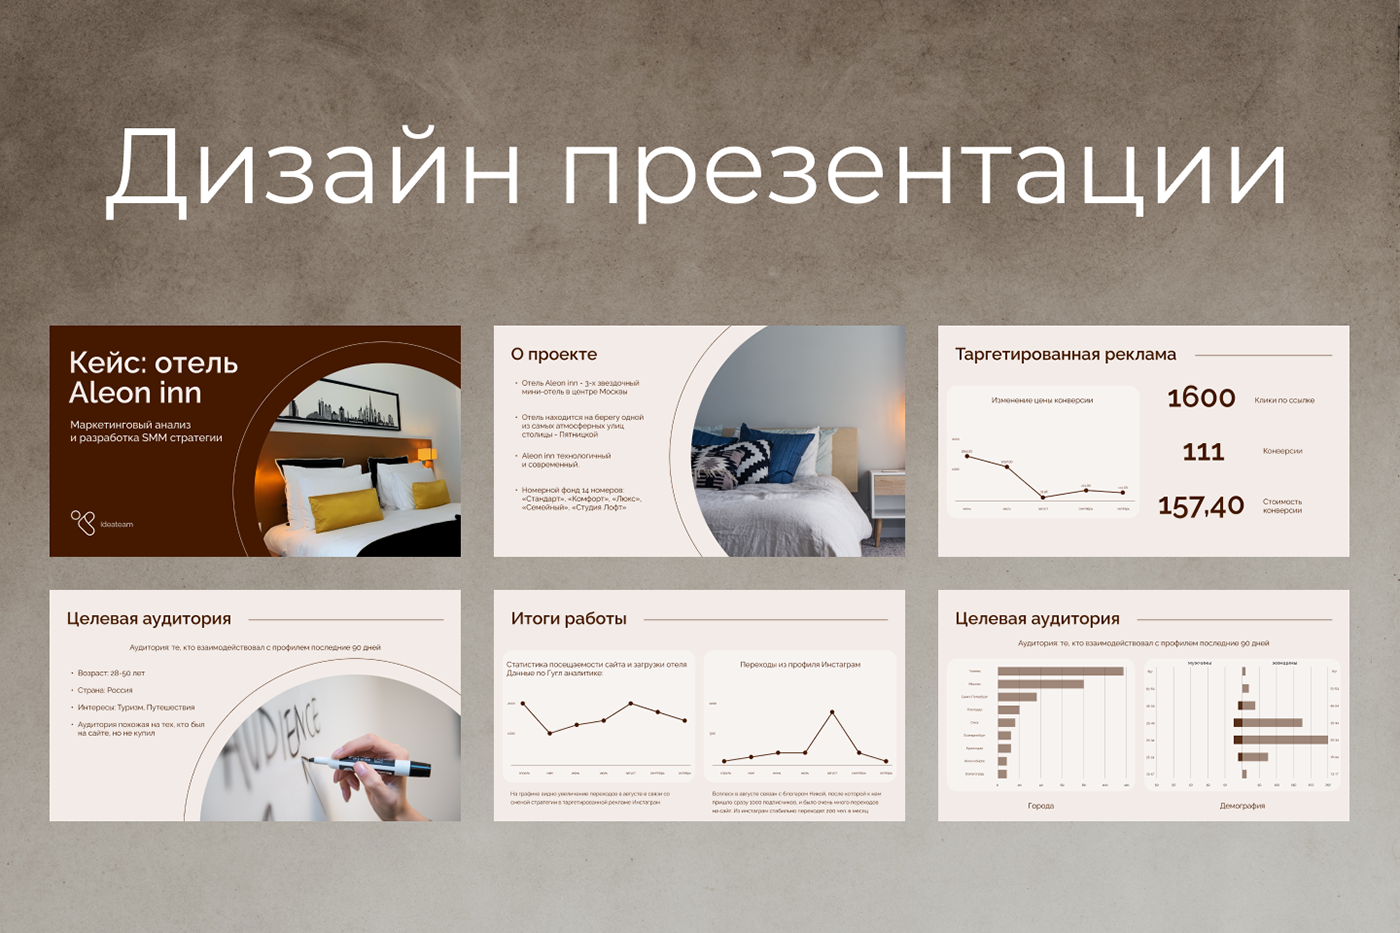 business presentation presentation design slides презентация